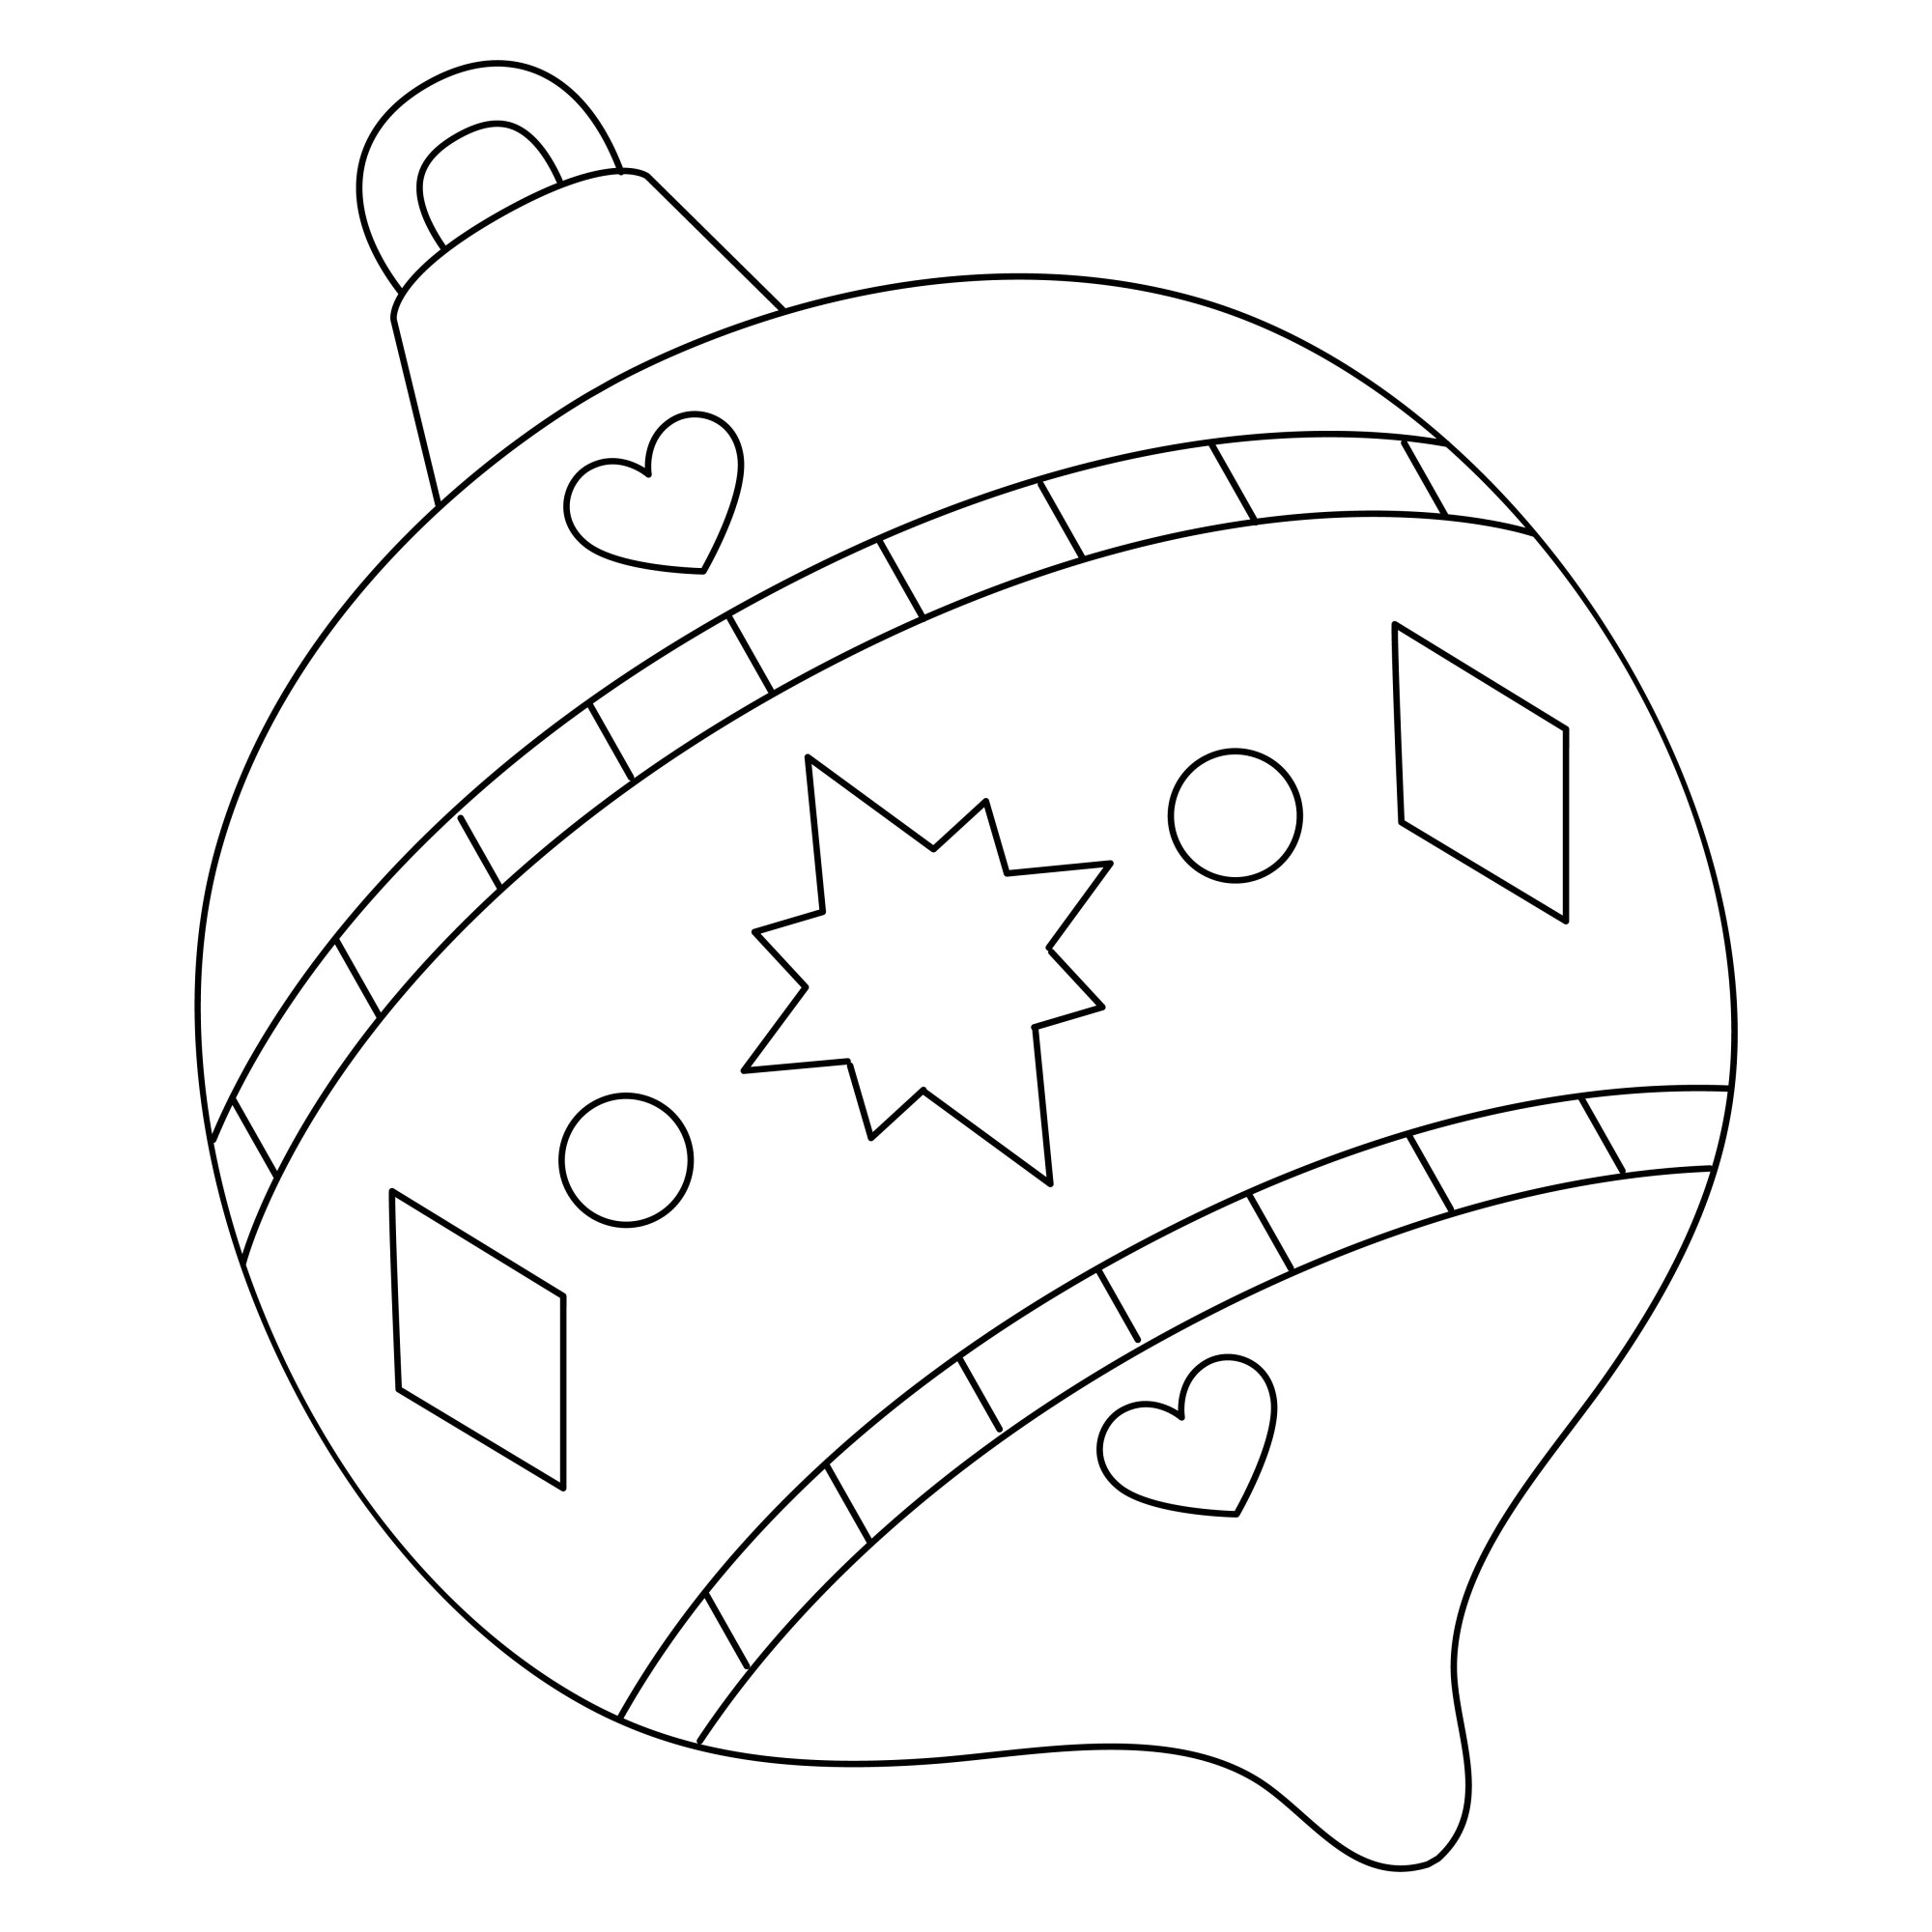 Раскраска для детей: ёлочная игрушка с узорами сердечек и звездочек